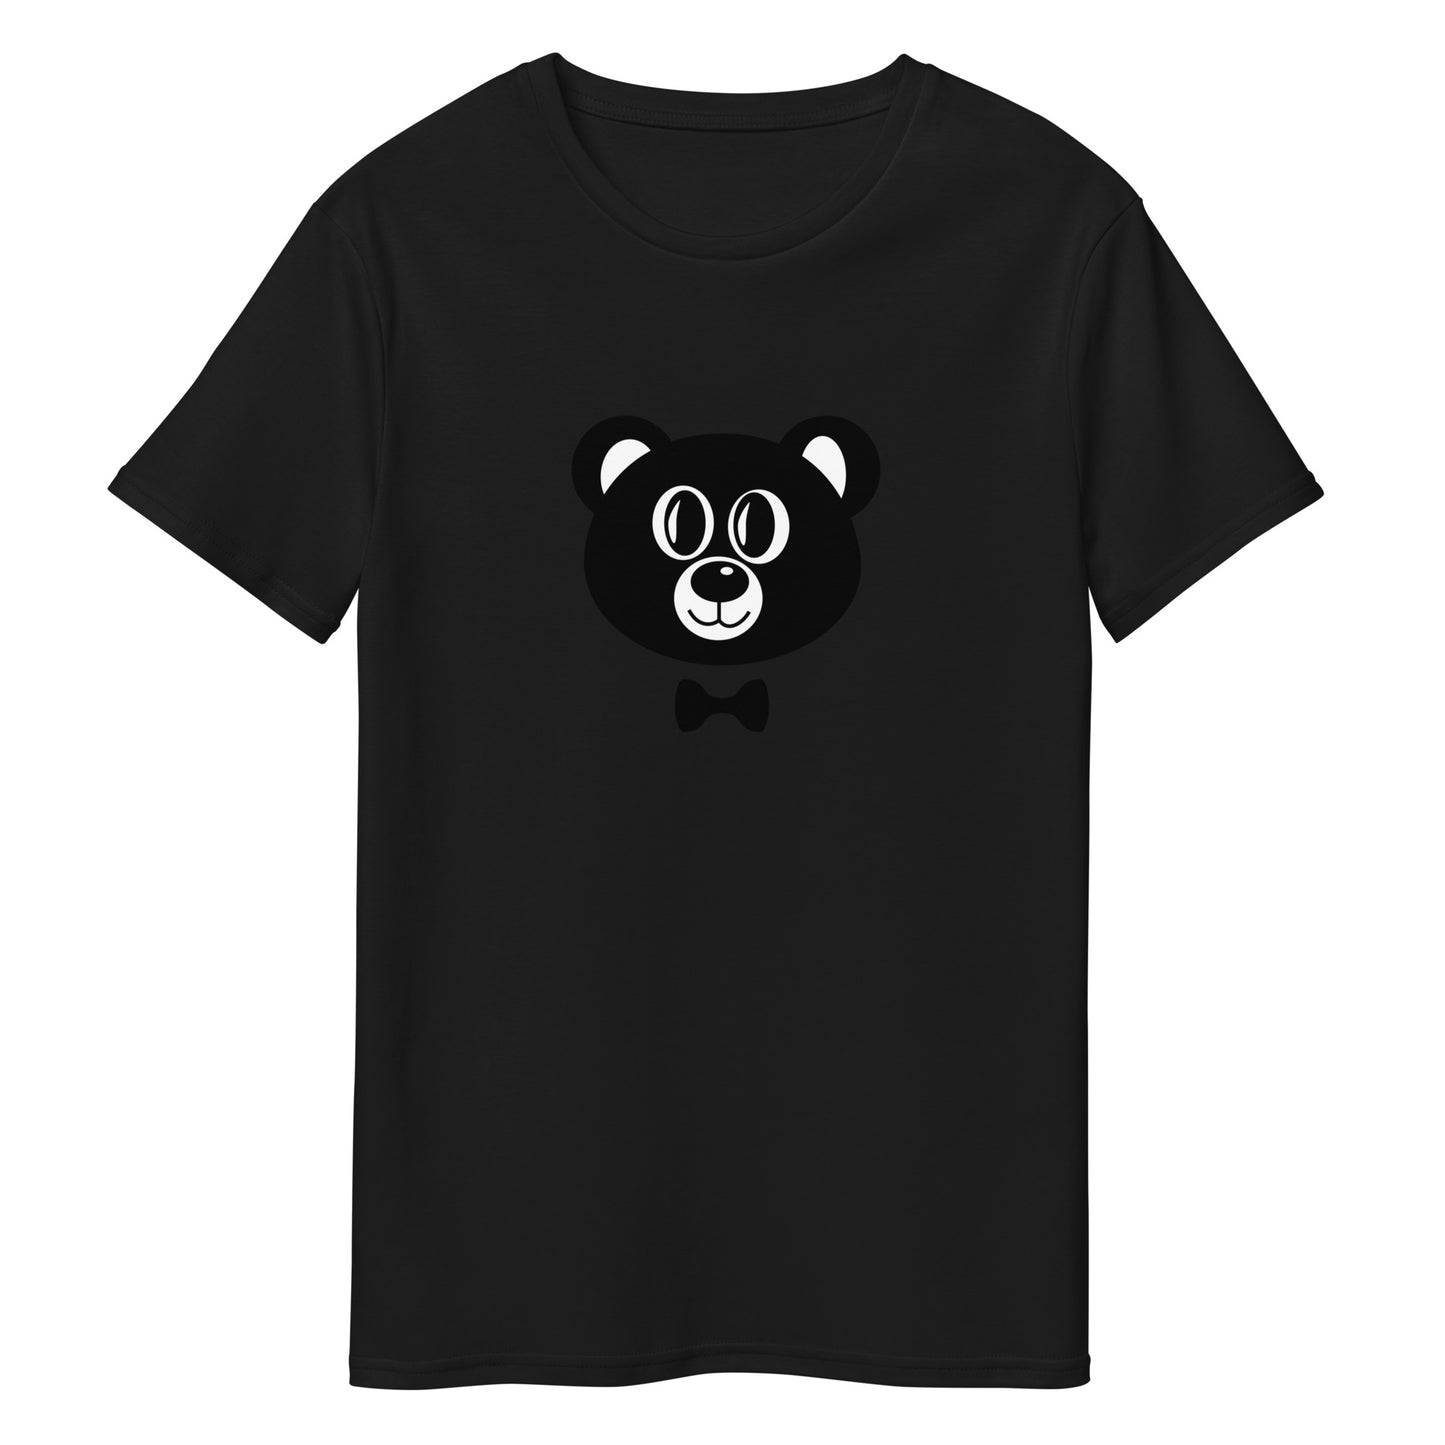 Herren-T-Shirt aus Premium-Baumwolle "HBF" (Augen offen)